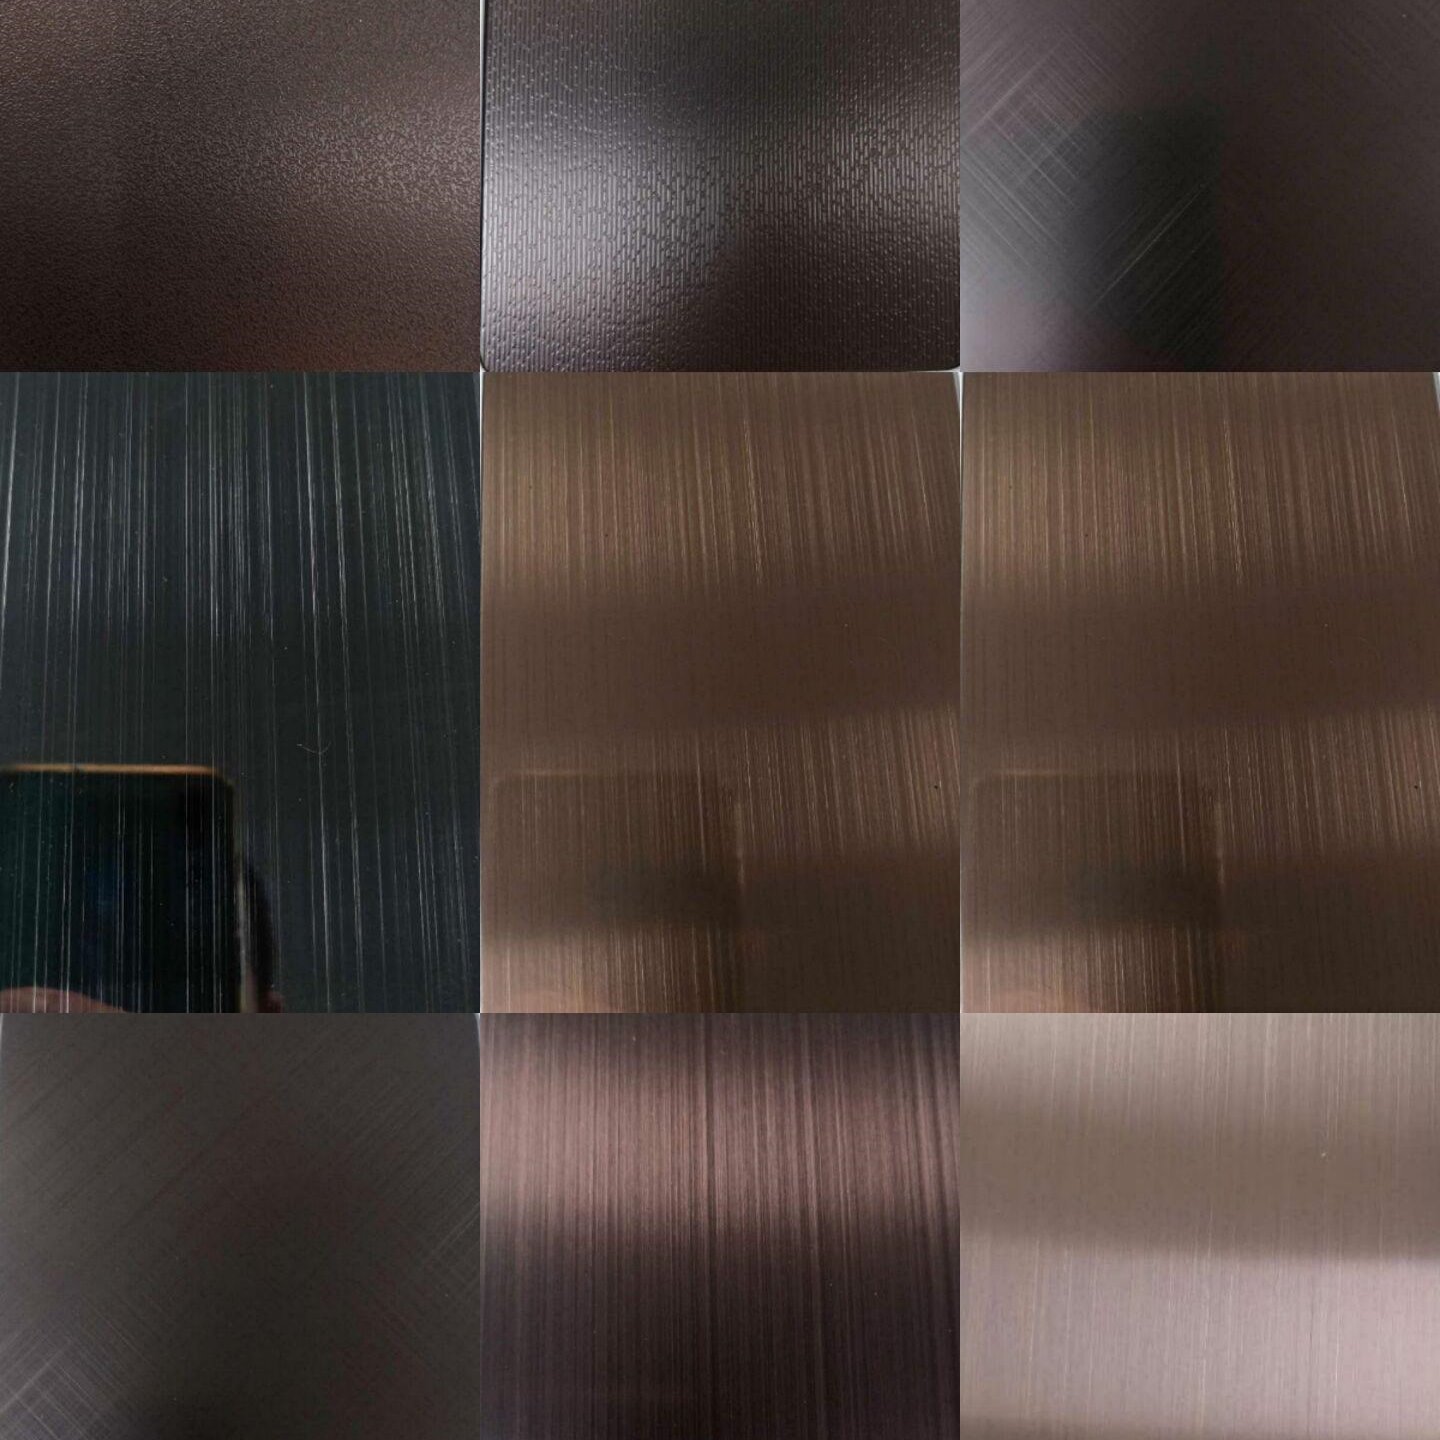 佛山市万山彩色不锈钢--厂家直销--201/304黑钛、古铜、香槟金、、、